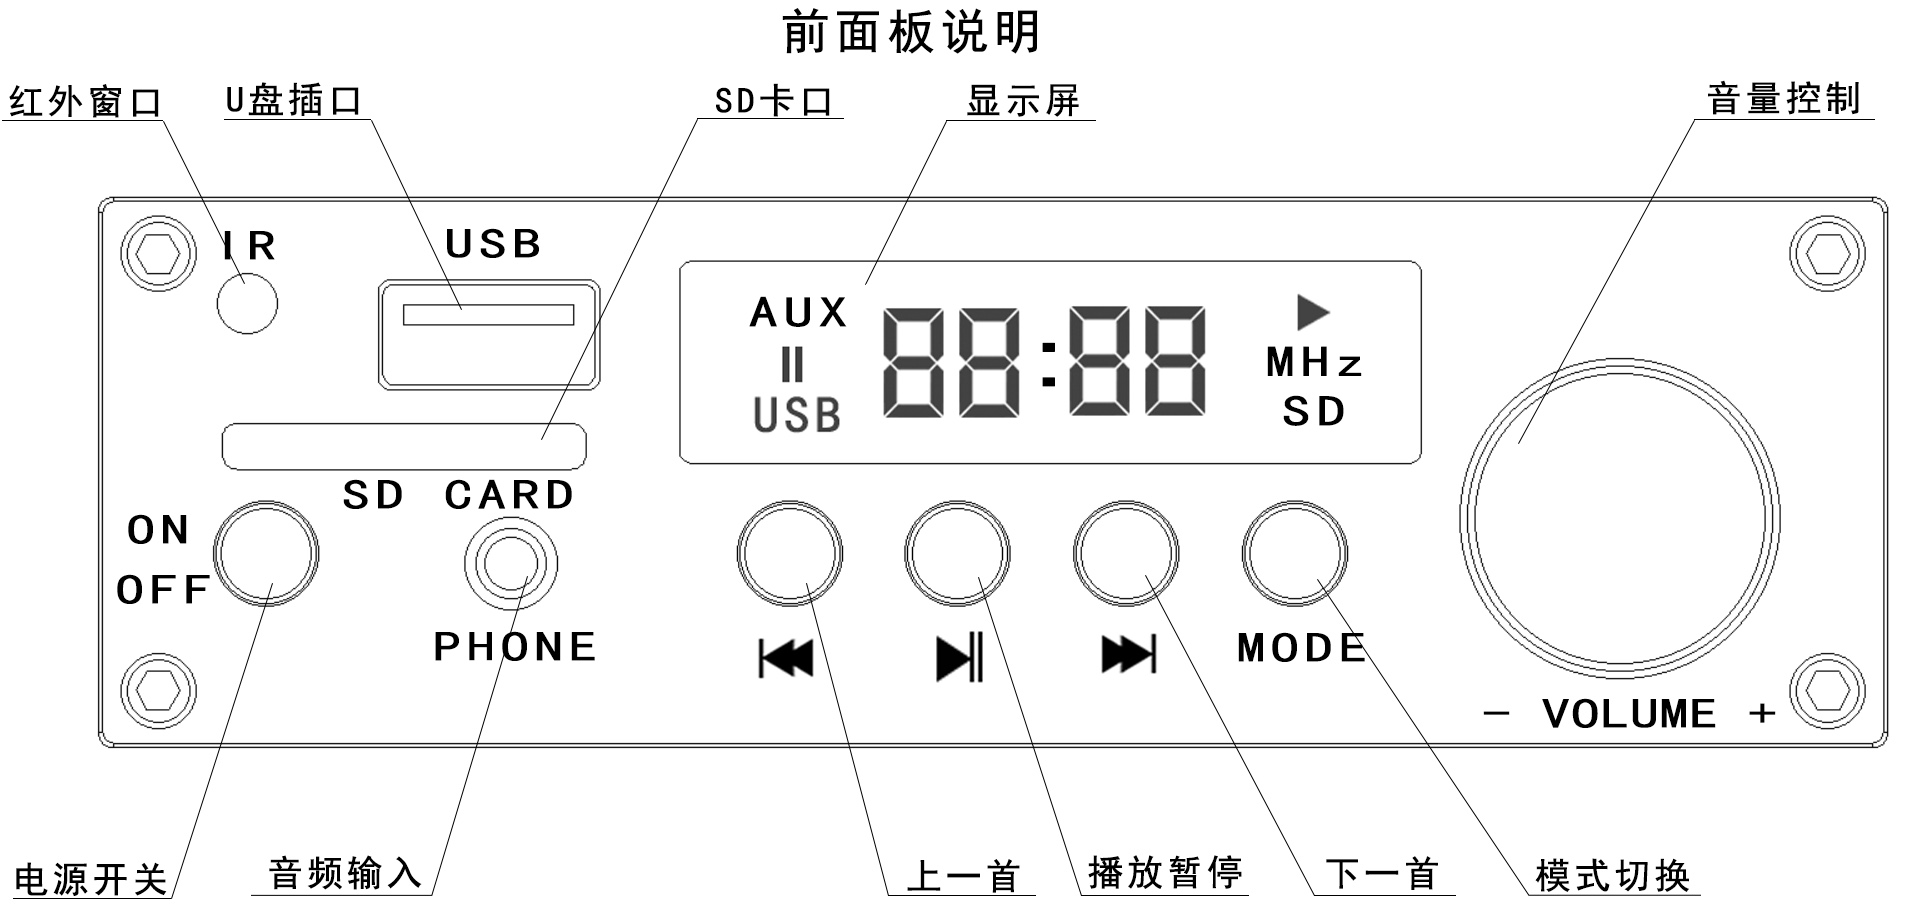 天籁TL-JX30W 数字功放(WIFI版)产品说明书插图